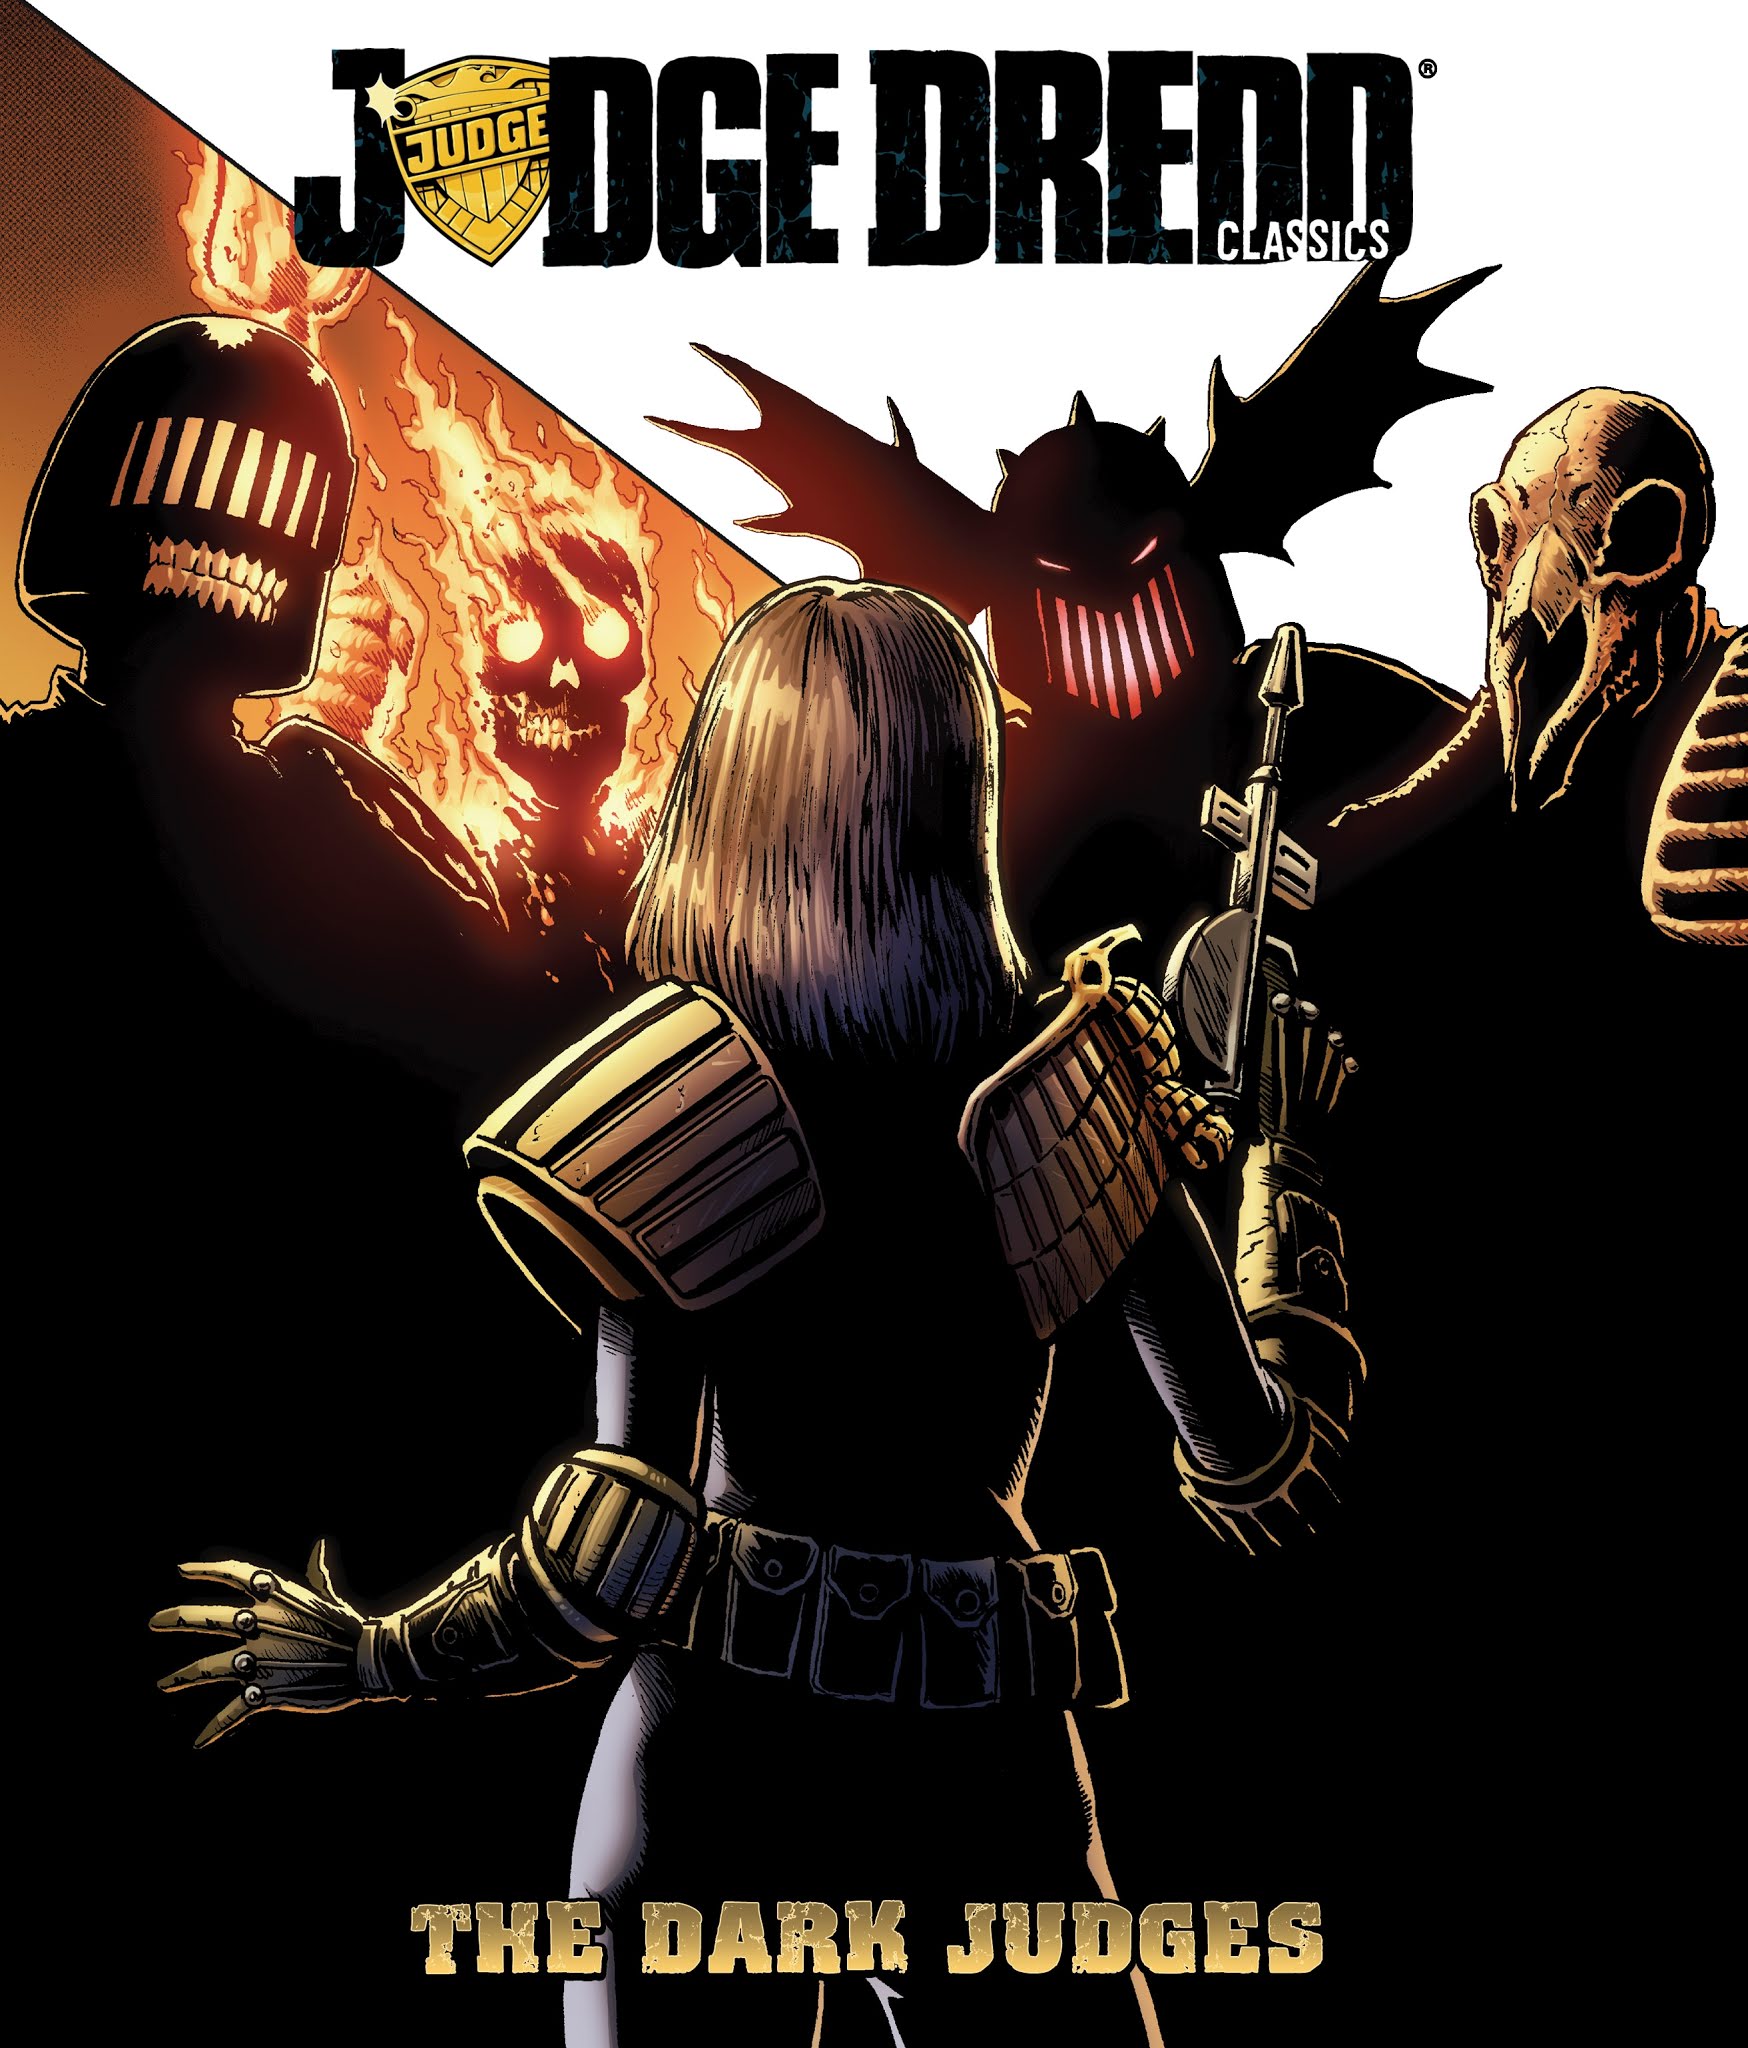 Read online Judge Dredd Classics: The Dark Judges comic -  Issue # TPB - 1